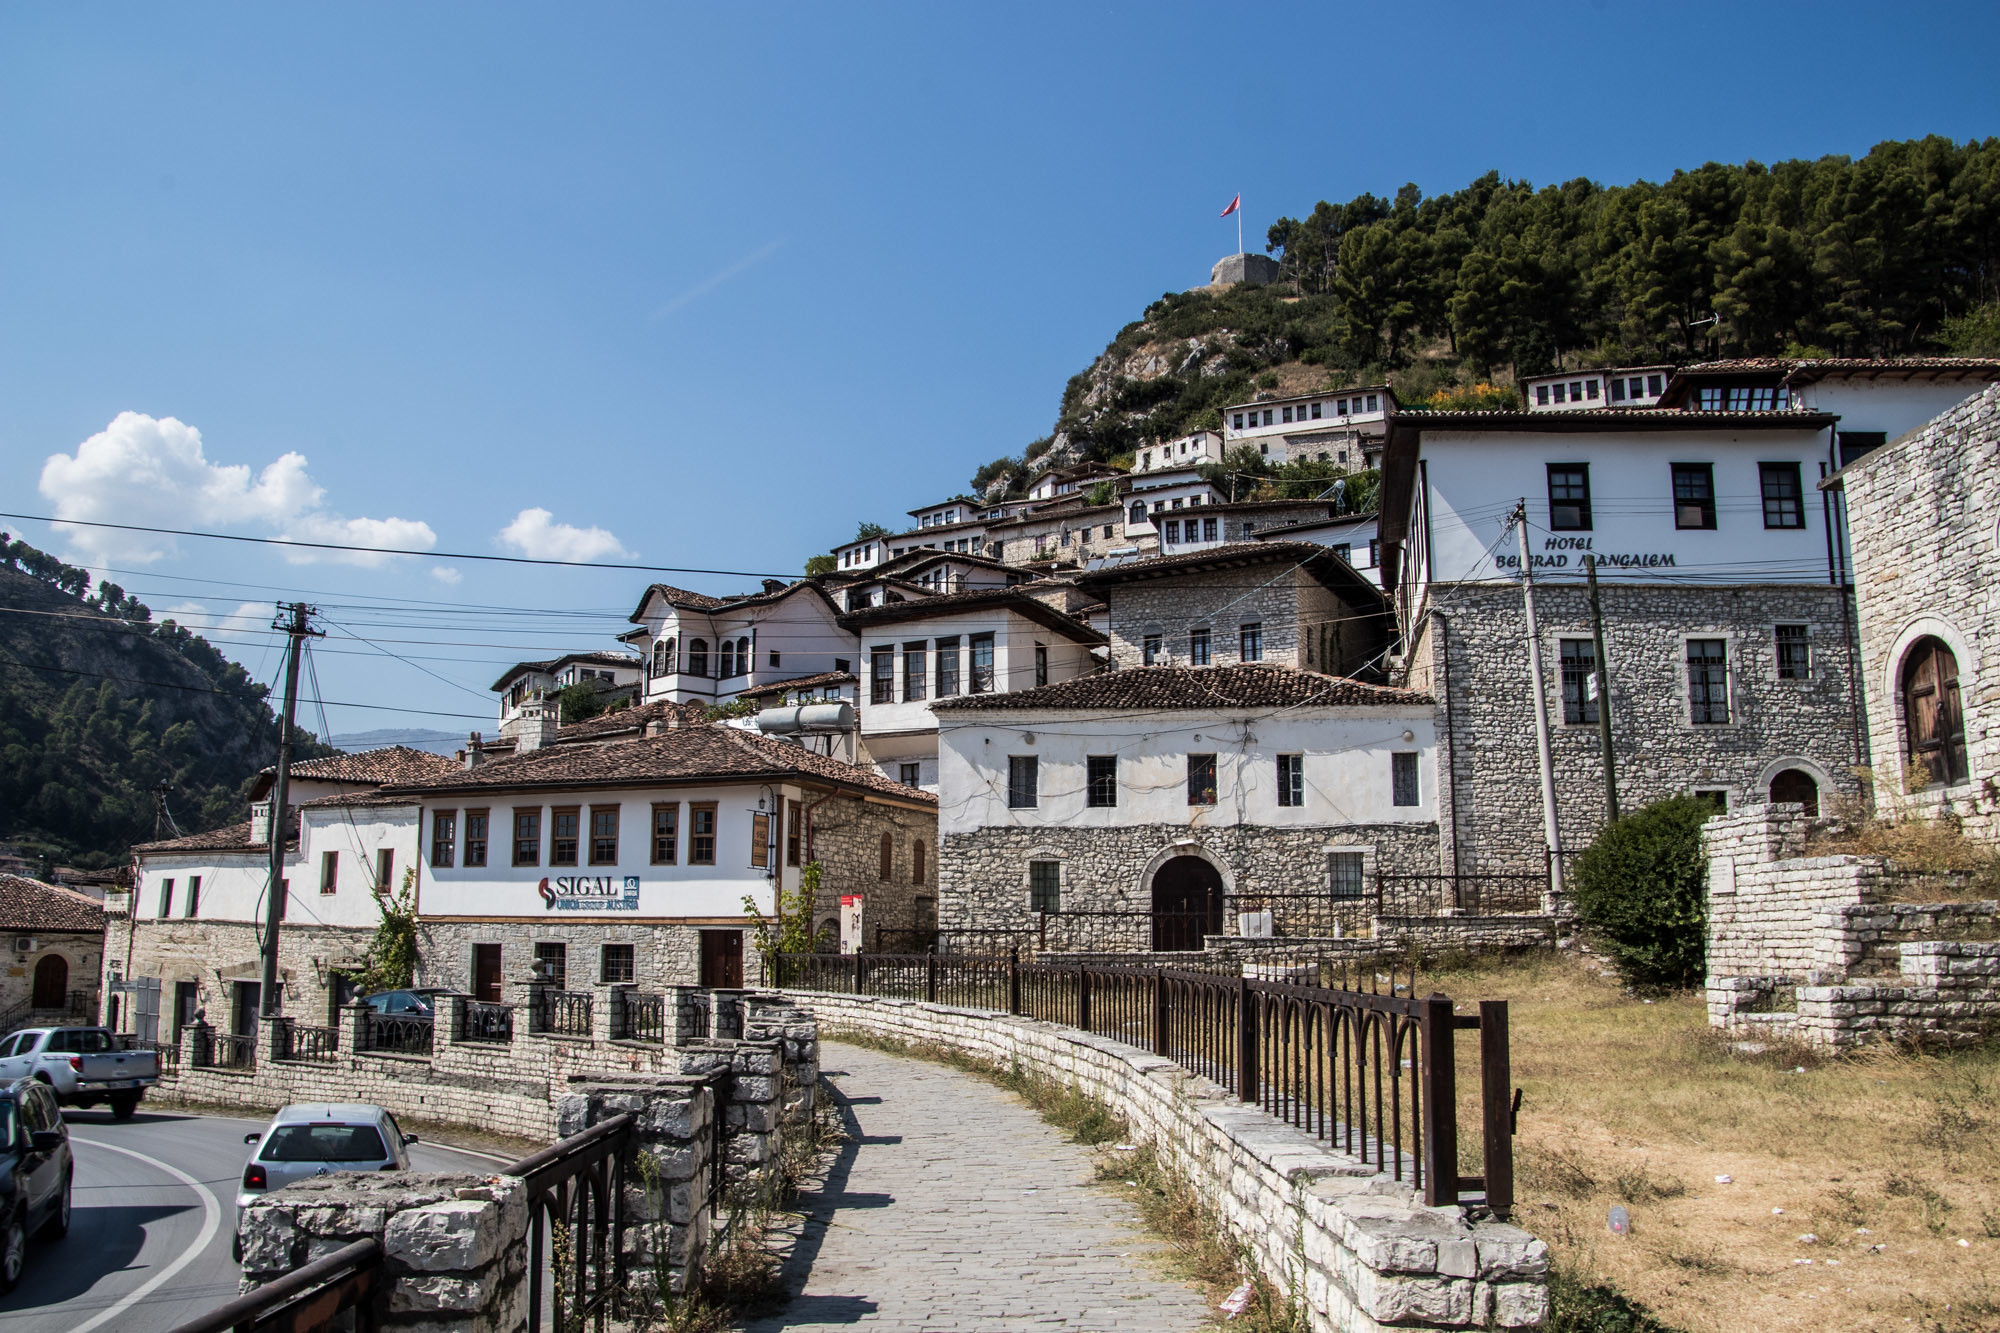 Berat Albania Photos